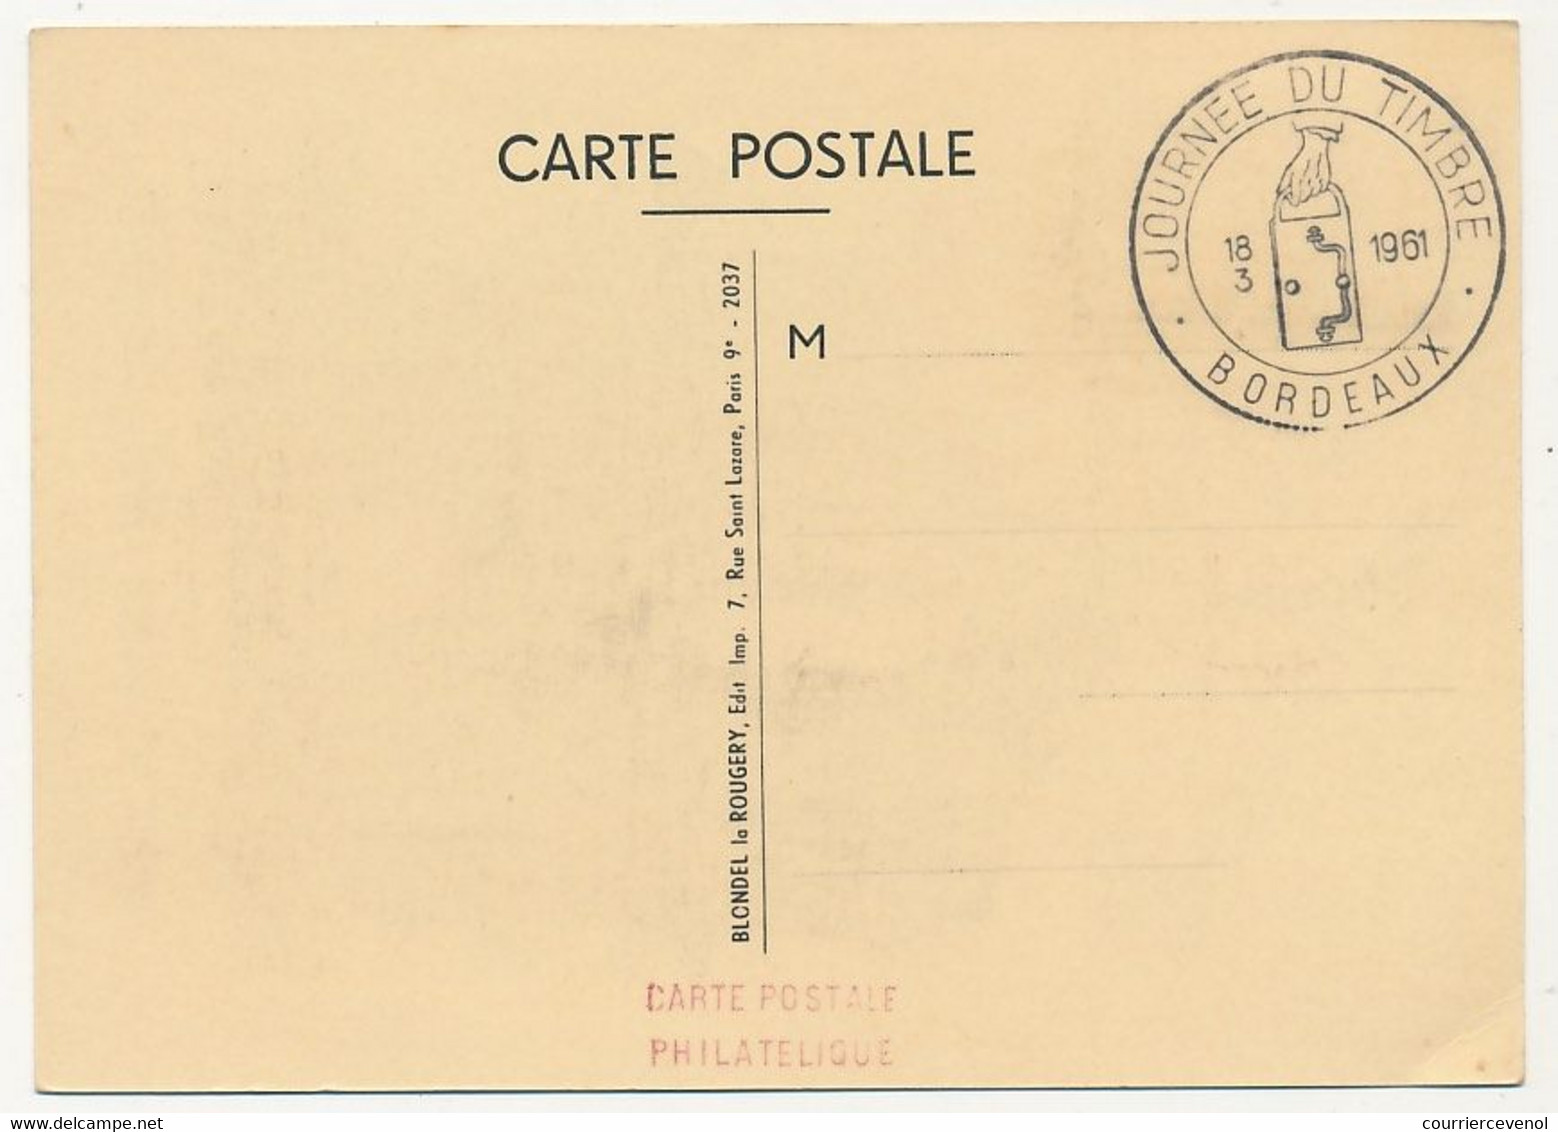 FRANCE - Carte Locale - Journée Du Timbre 1961 - 0,20 + 0,05 Facteur Petite Poste - BORDEAUX - 18/3/1961 - Covers & Documents